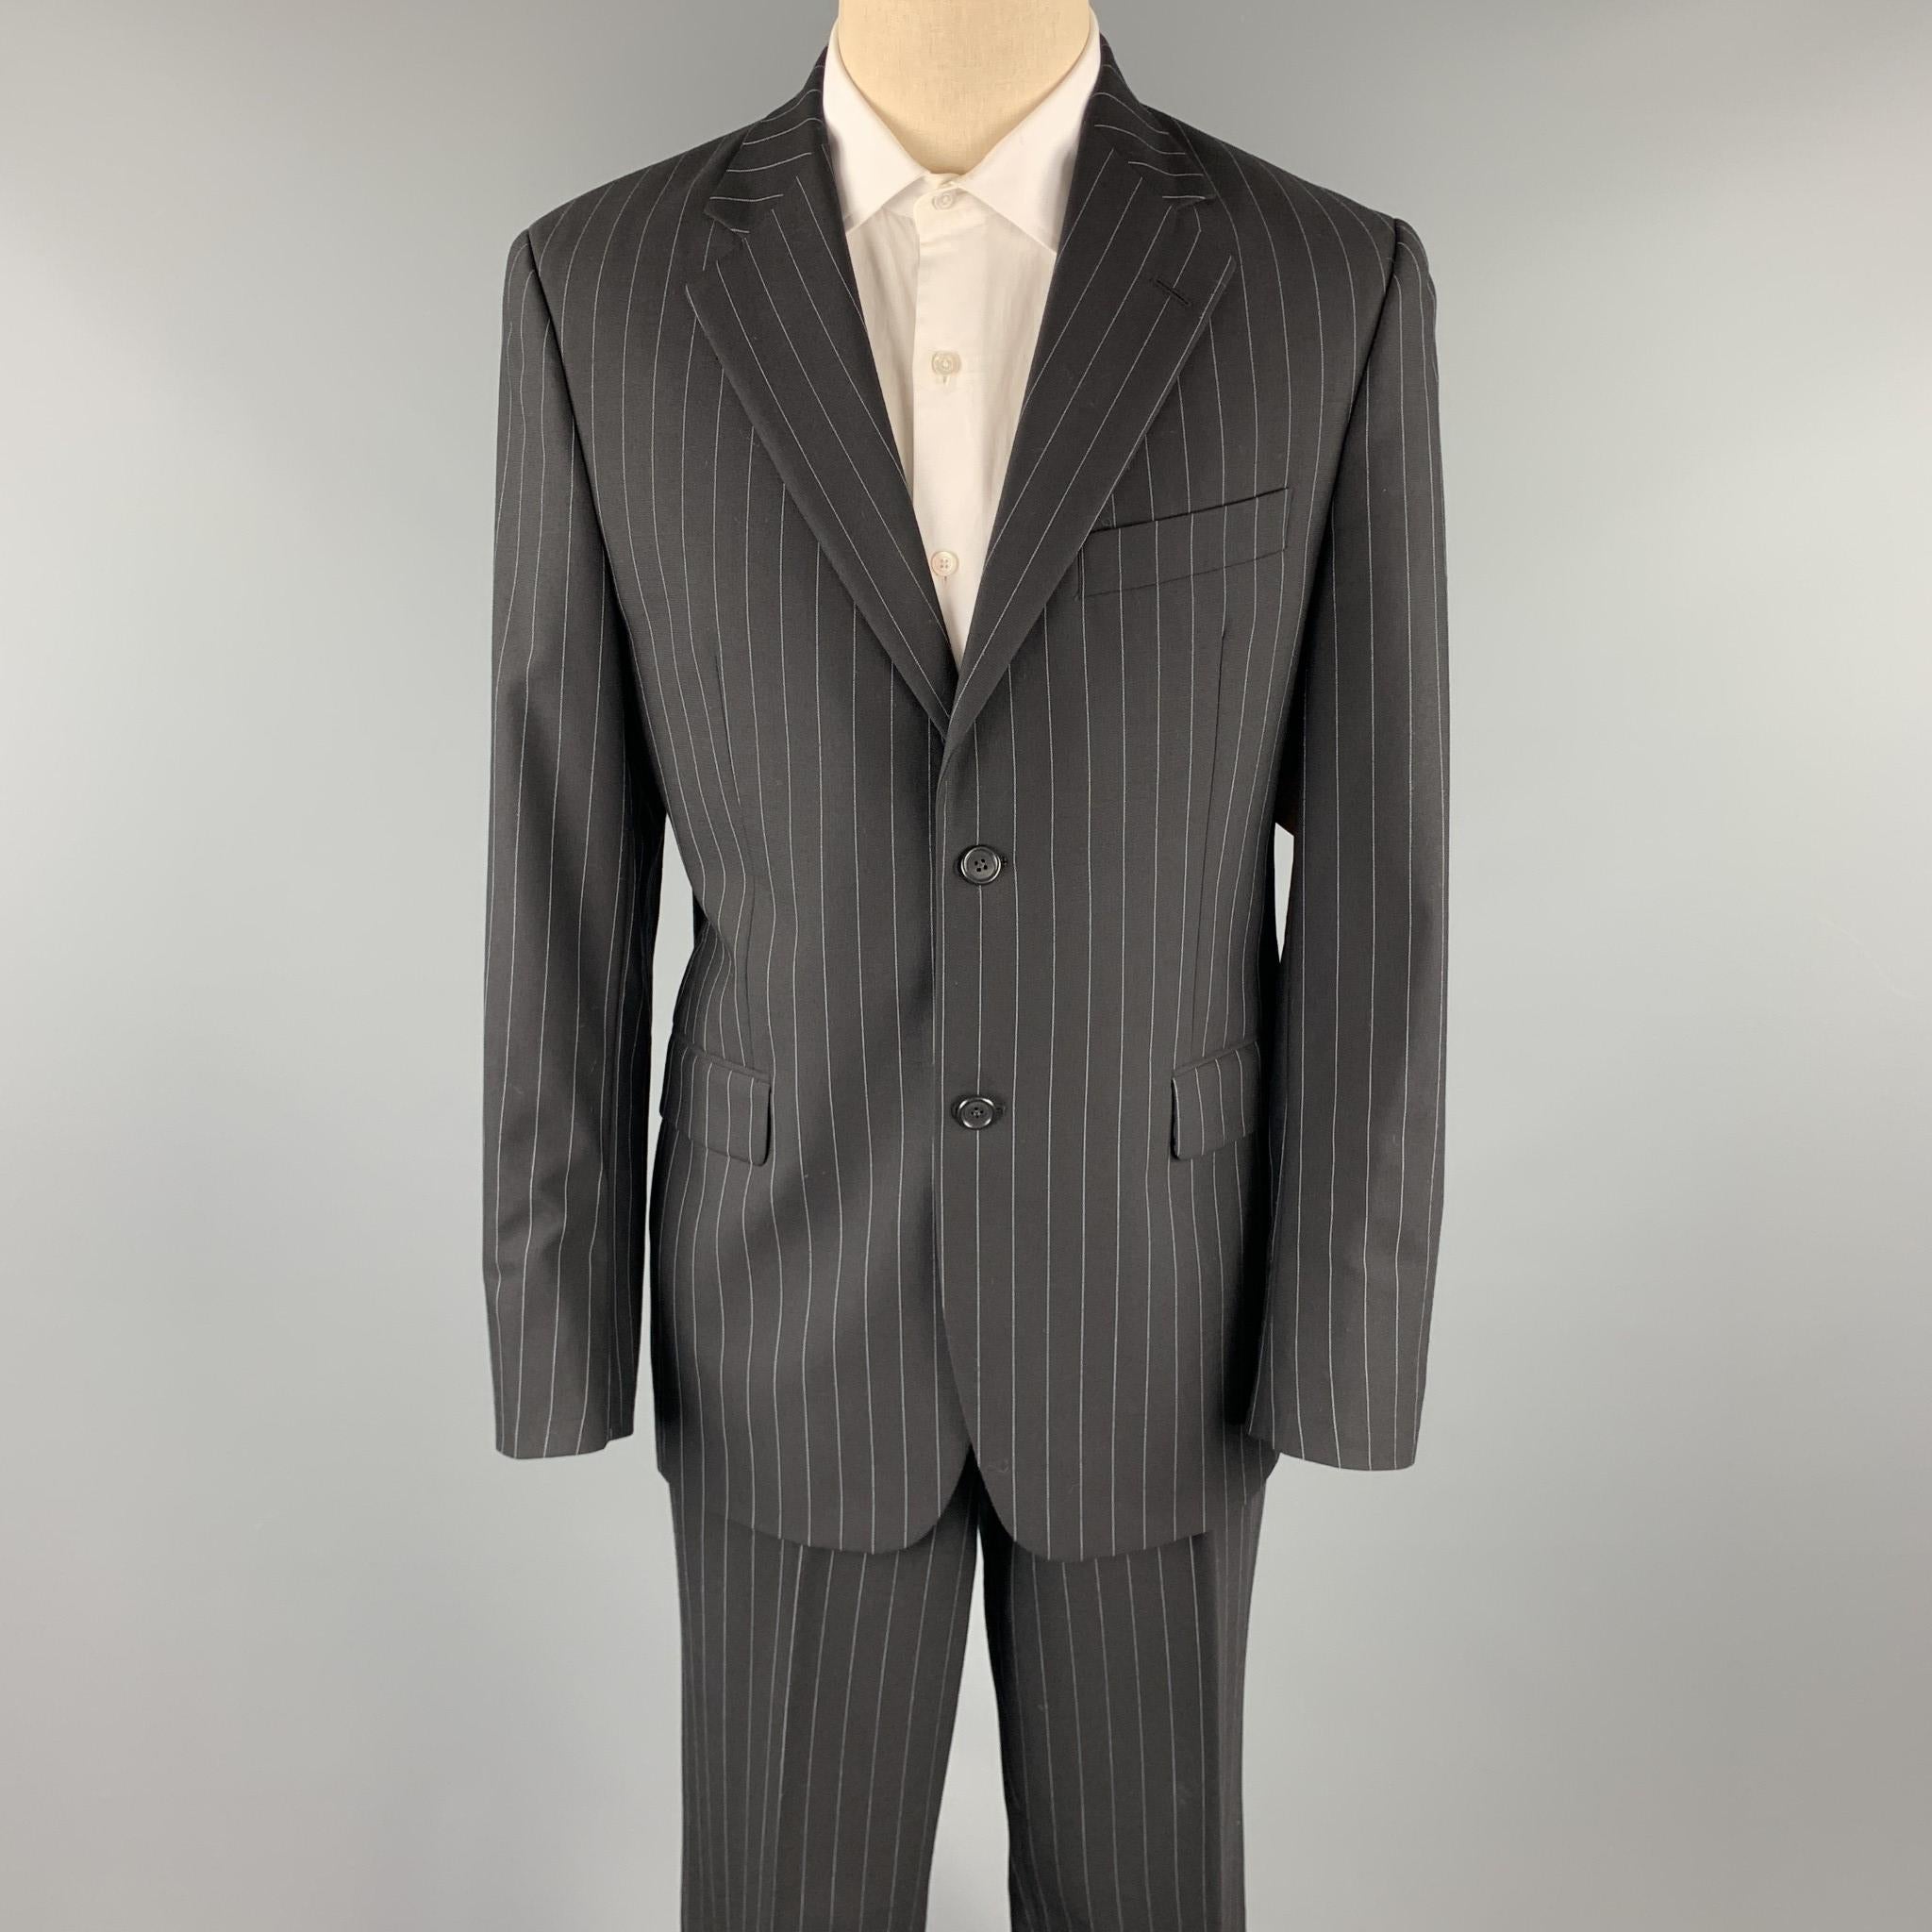 john bartlett suits